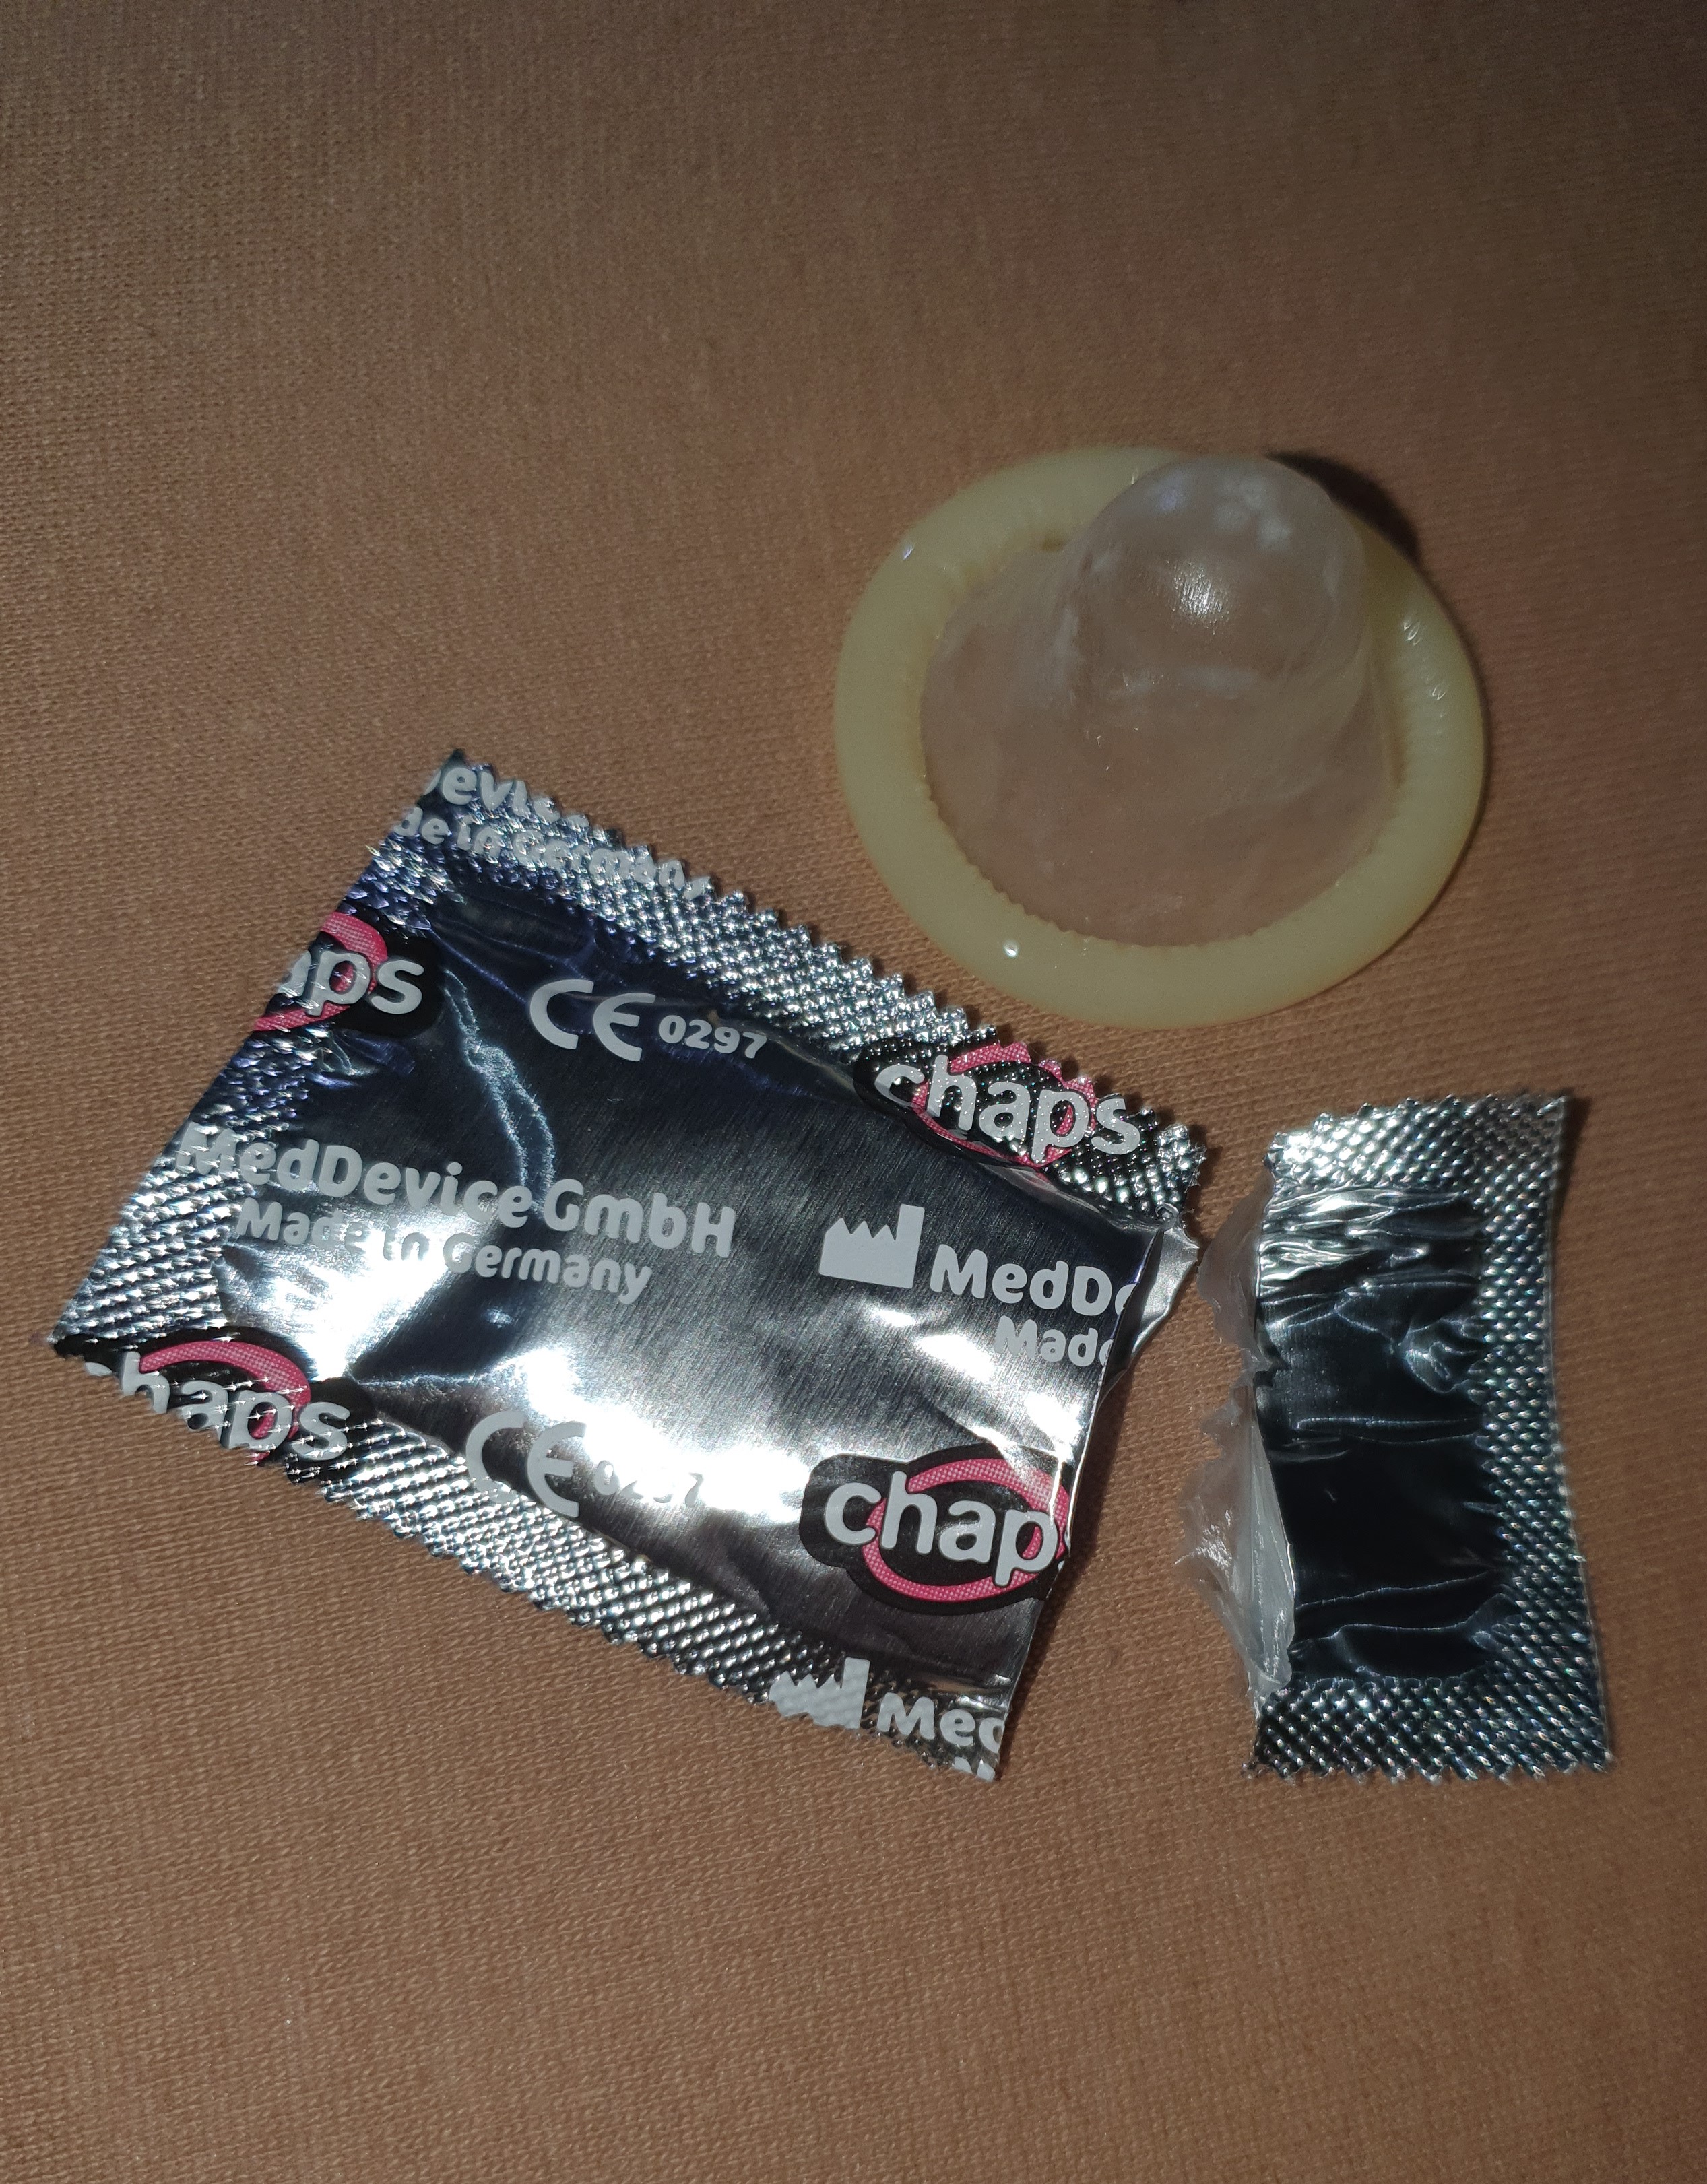 Kondome verkaufen benutzte Vietnam: Benutzte